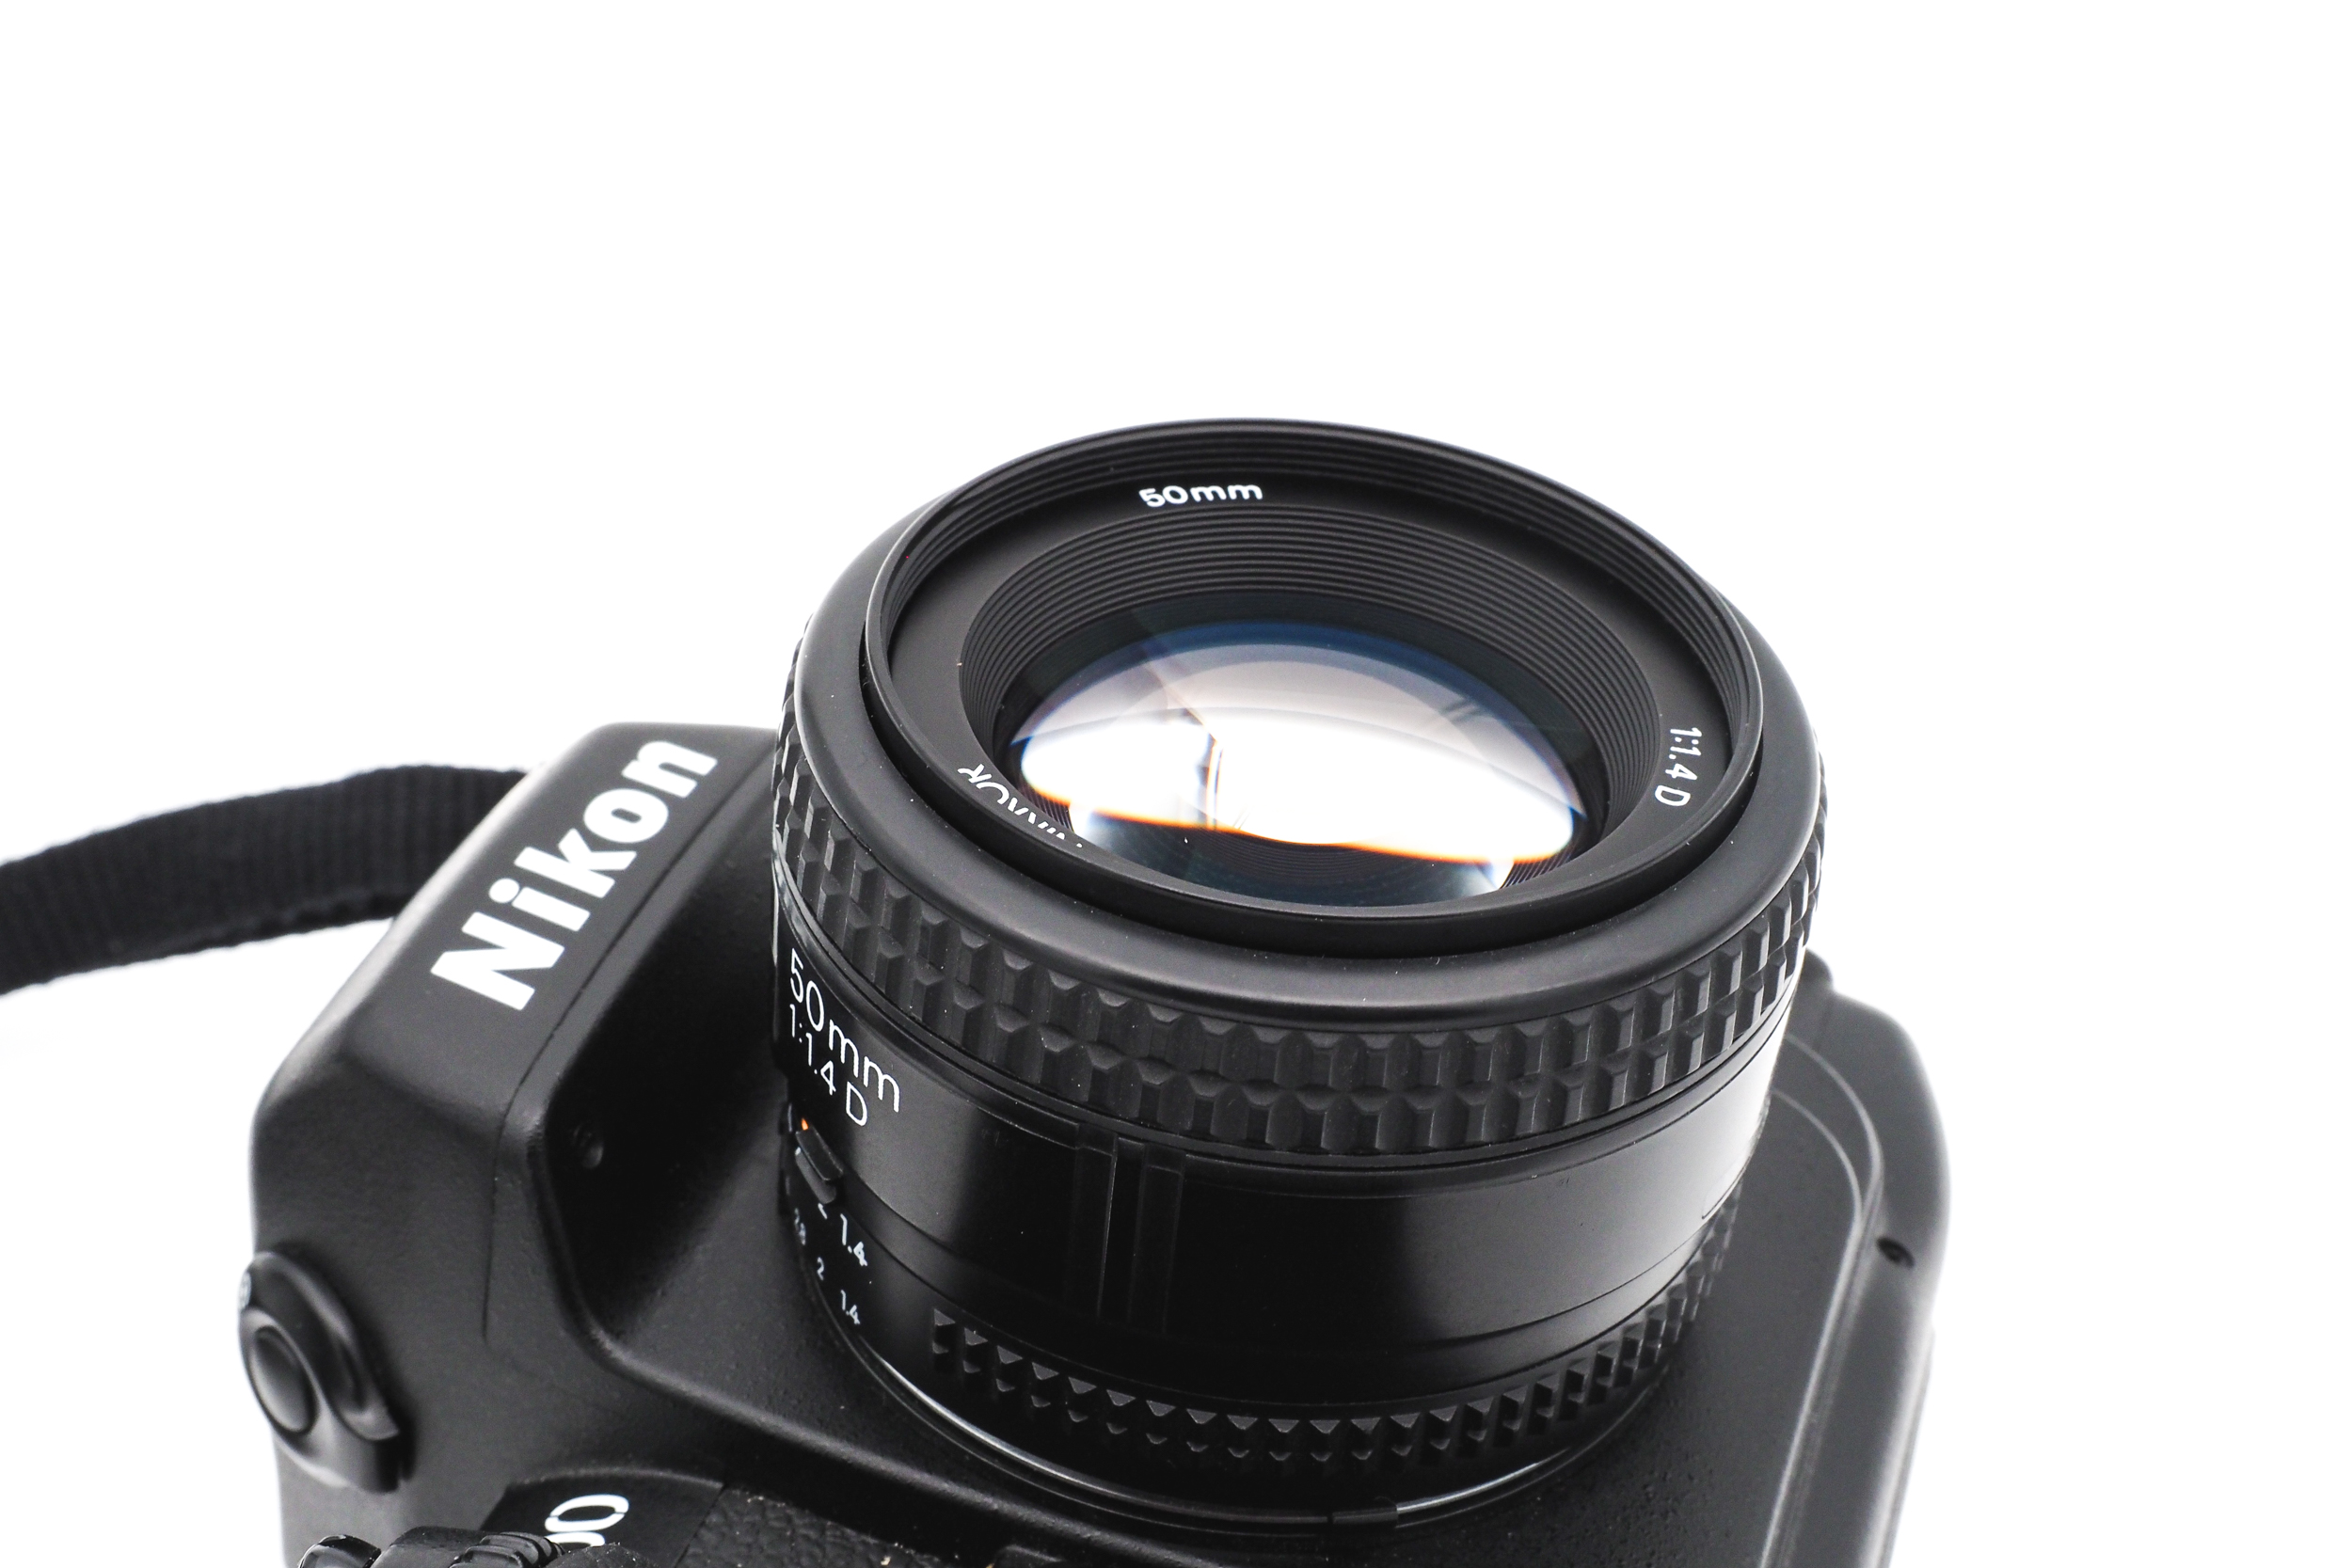 Nikon F100 + 50mm f/1.4 D AF Nikkor